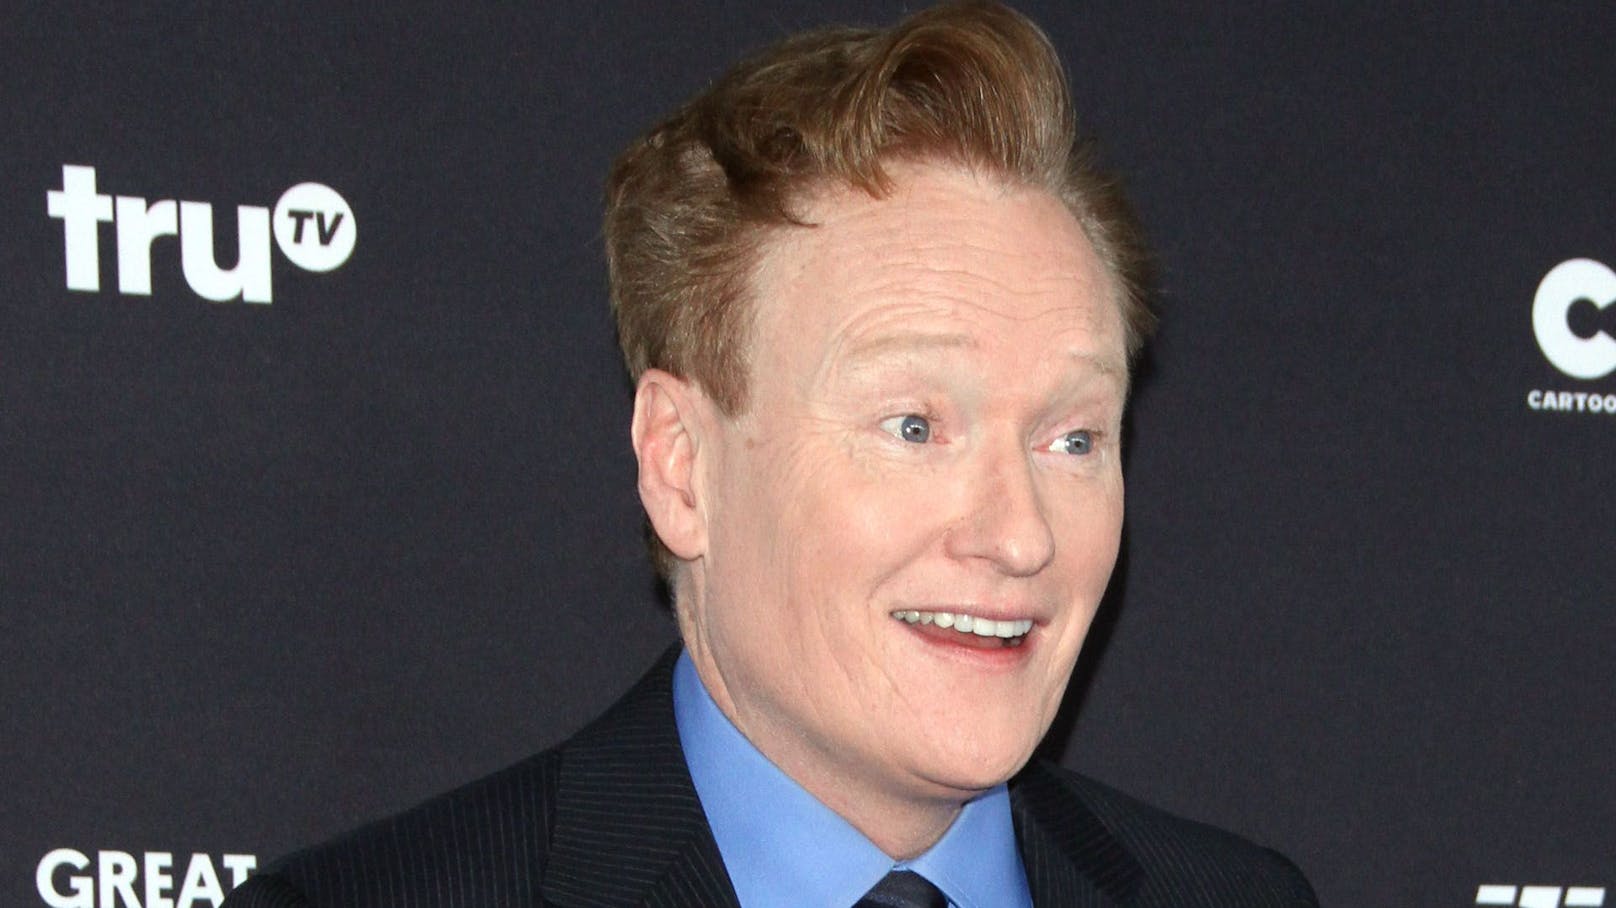 Im Laufe seiner TV-Karriere moderierte <strong>Conan O'Brien</strong> die erfolgreichen Formate "Conan", "Late Night with Conan O'Brien" und "Tonight Show with Conan O'Brien".<br>